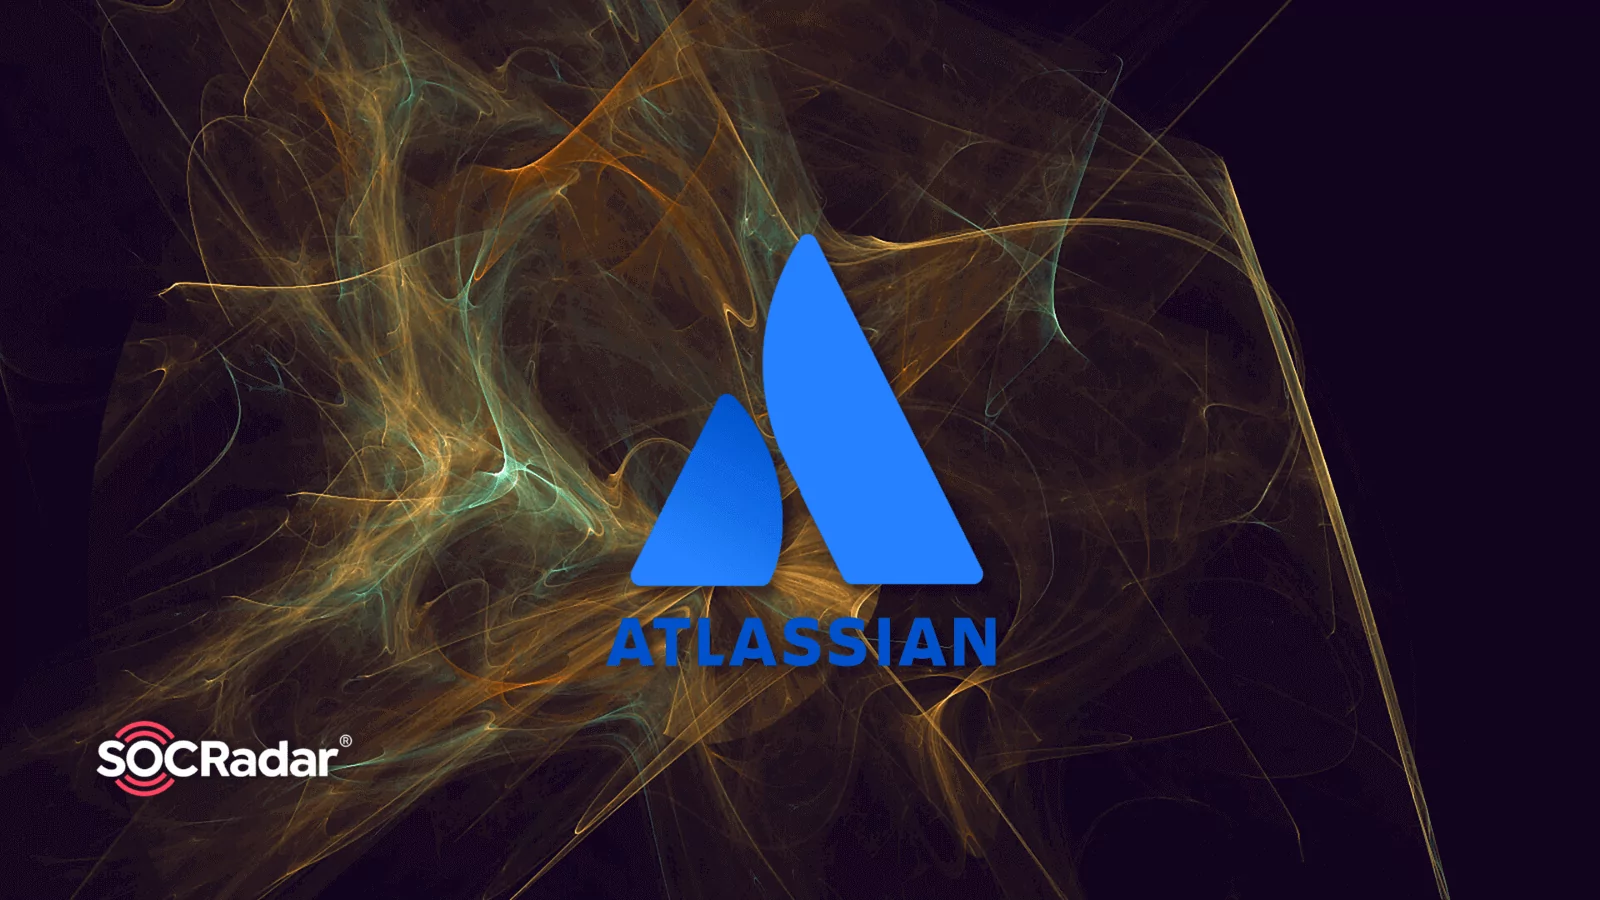 SOCRadar® Cyber Intelligence Inc. | Atlassian Hacked: SiegedSec Hacker Group Leaks Company’s Data